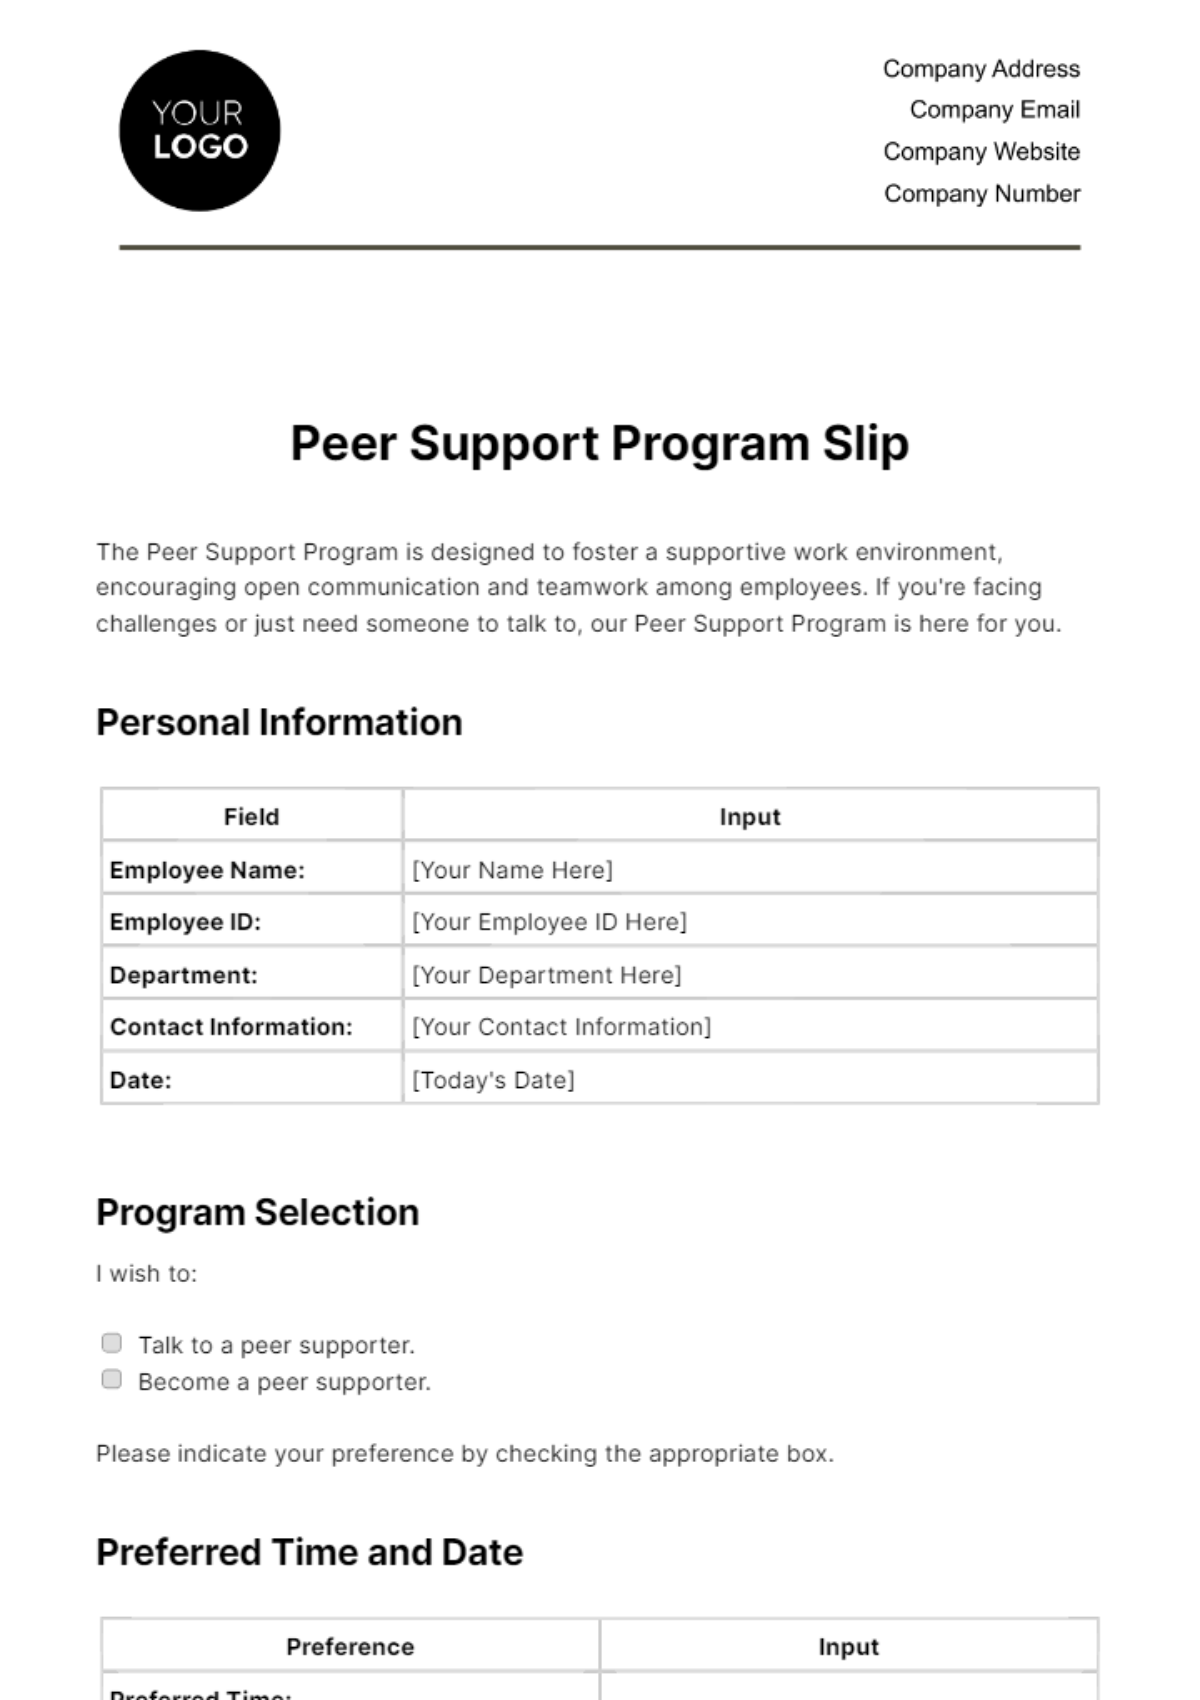 Peer Support Program Slip HR Template